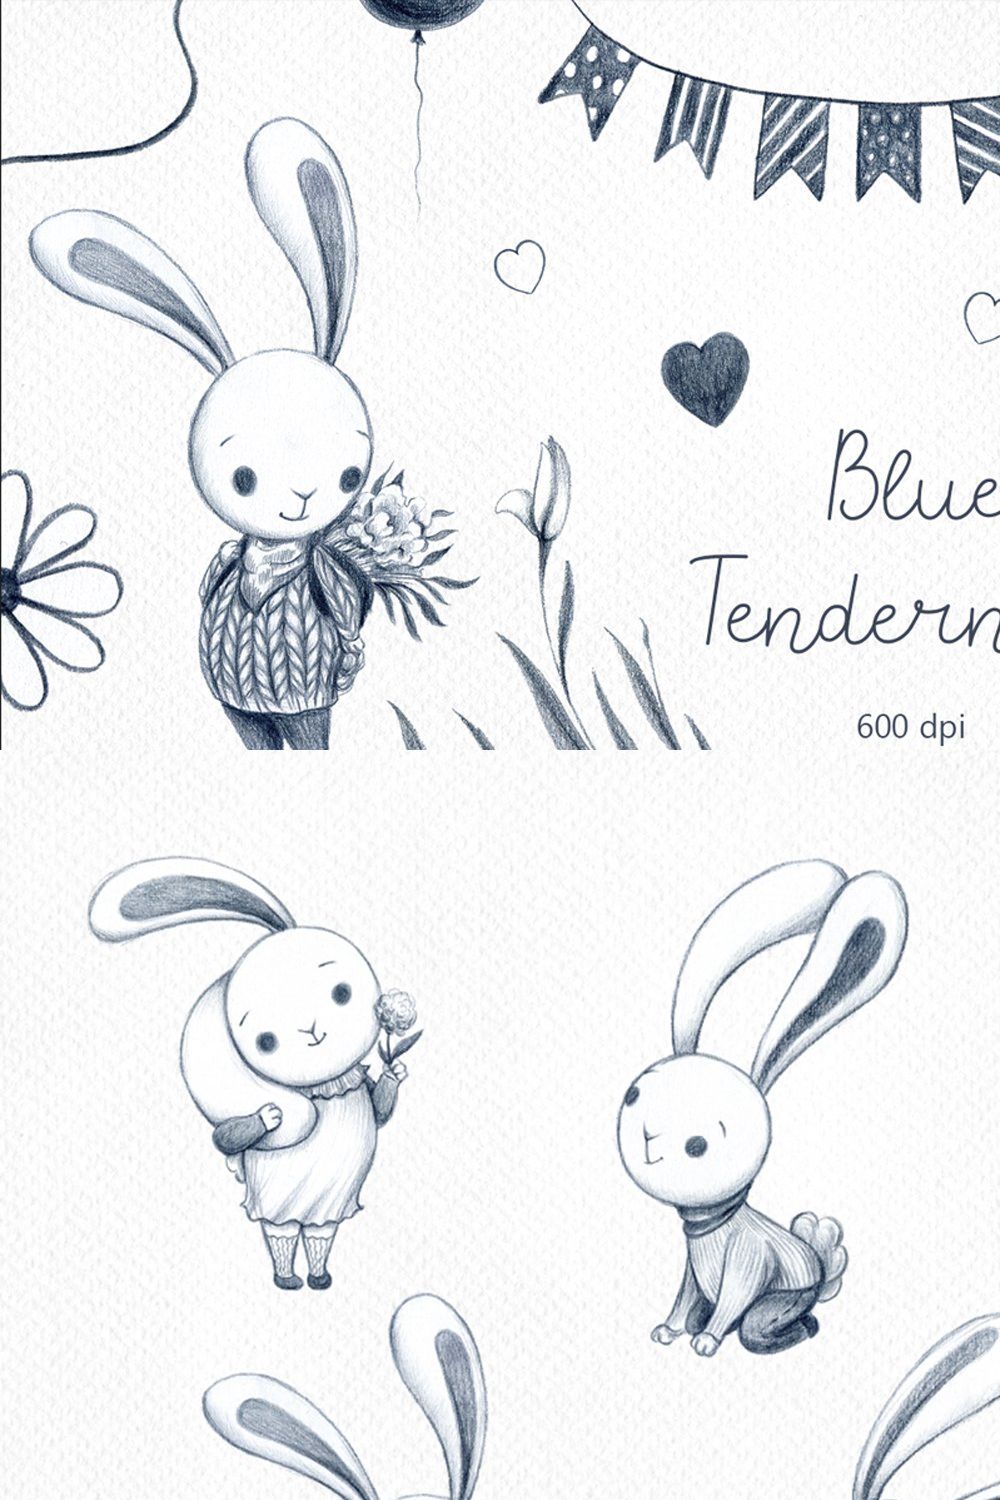 Blue Tenderness - color pencil set pinterest preview image.